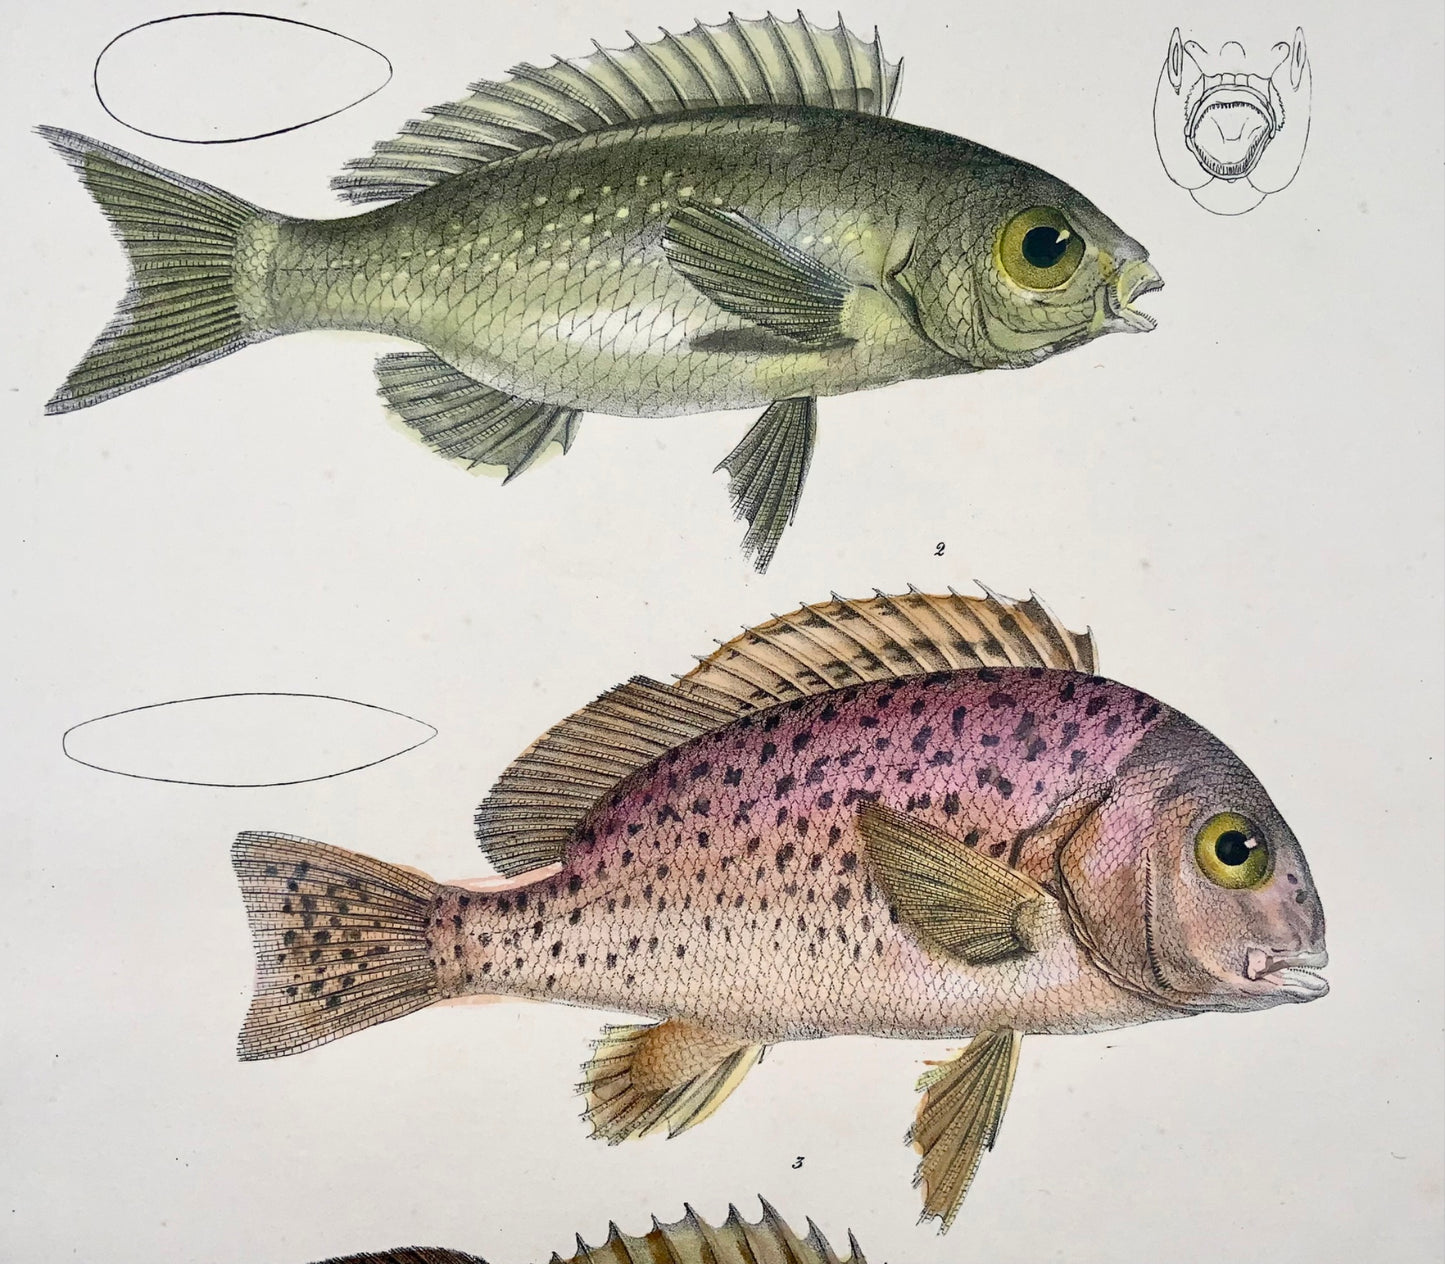 1833 Ardoise australienne, sweetlips, poisson, Schinz, folio, lithographie coloriée